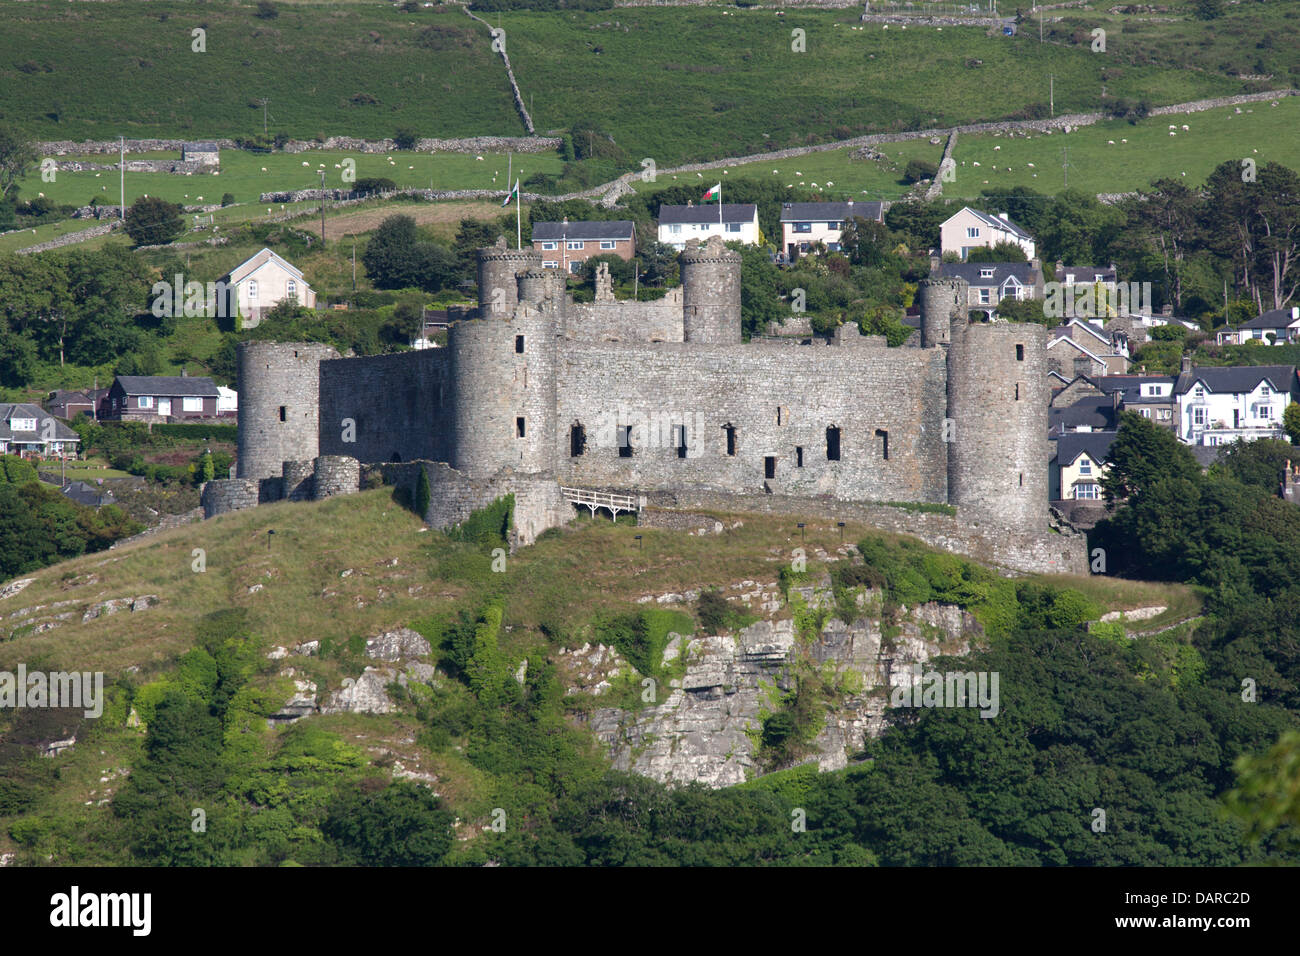 Stadt von Harlech, Wales.  Malerische Aussicht auf die nördlichen und westlichen Wände des Harlech Castle. Stockfoto